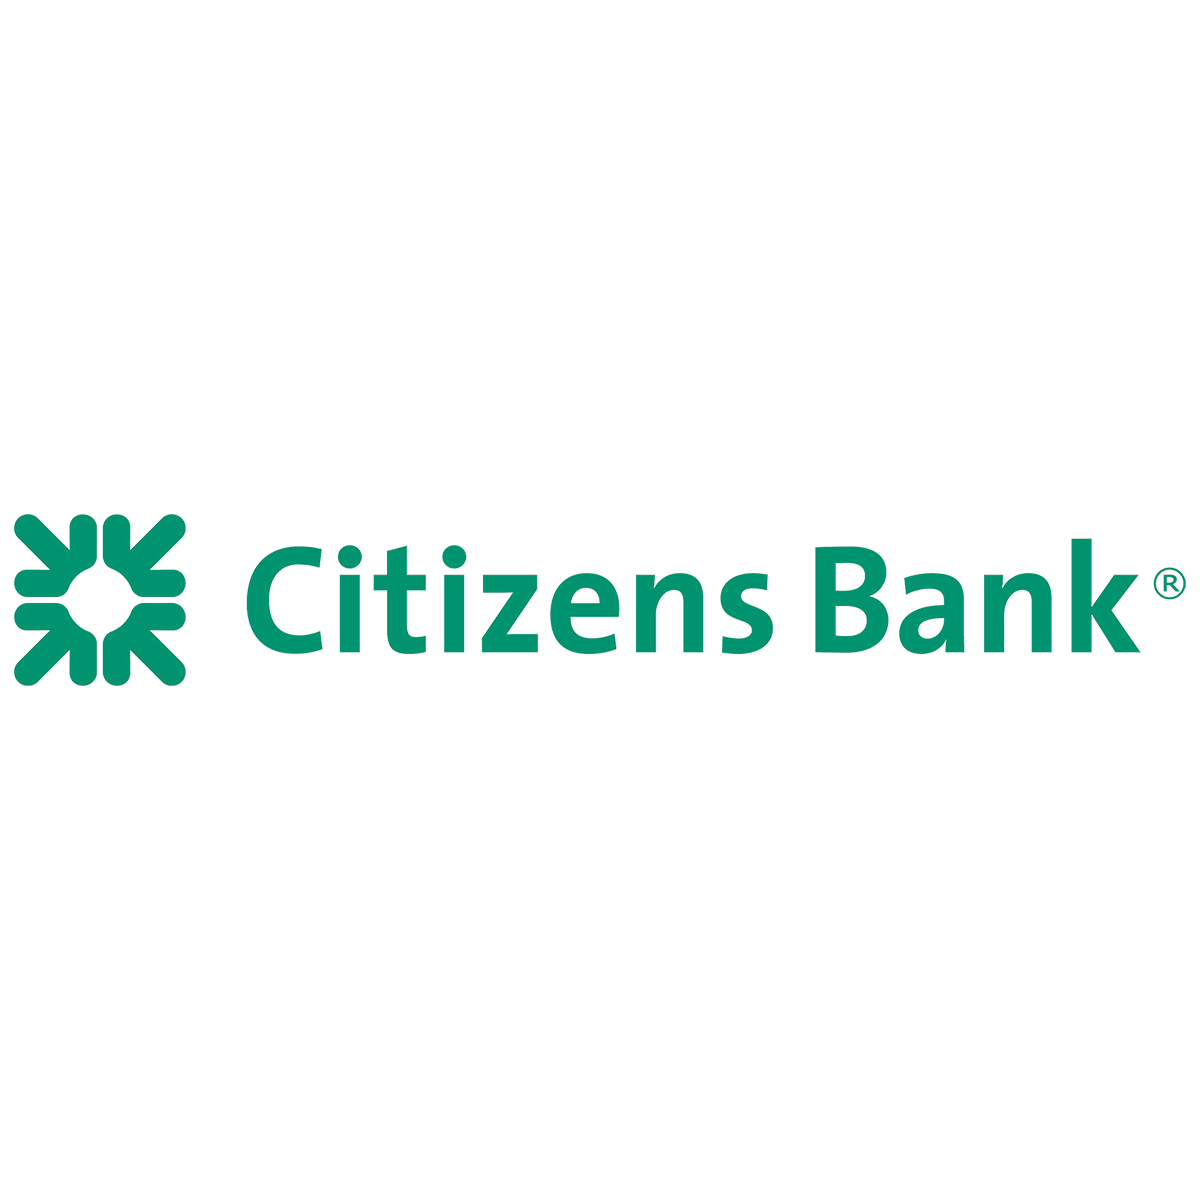 Citizens Bank website